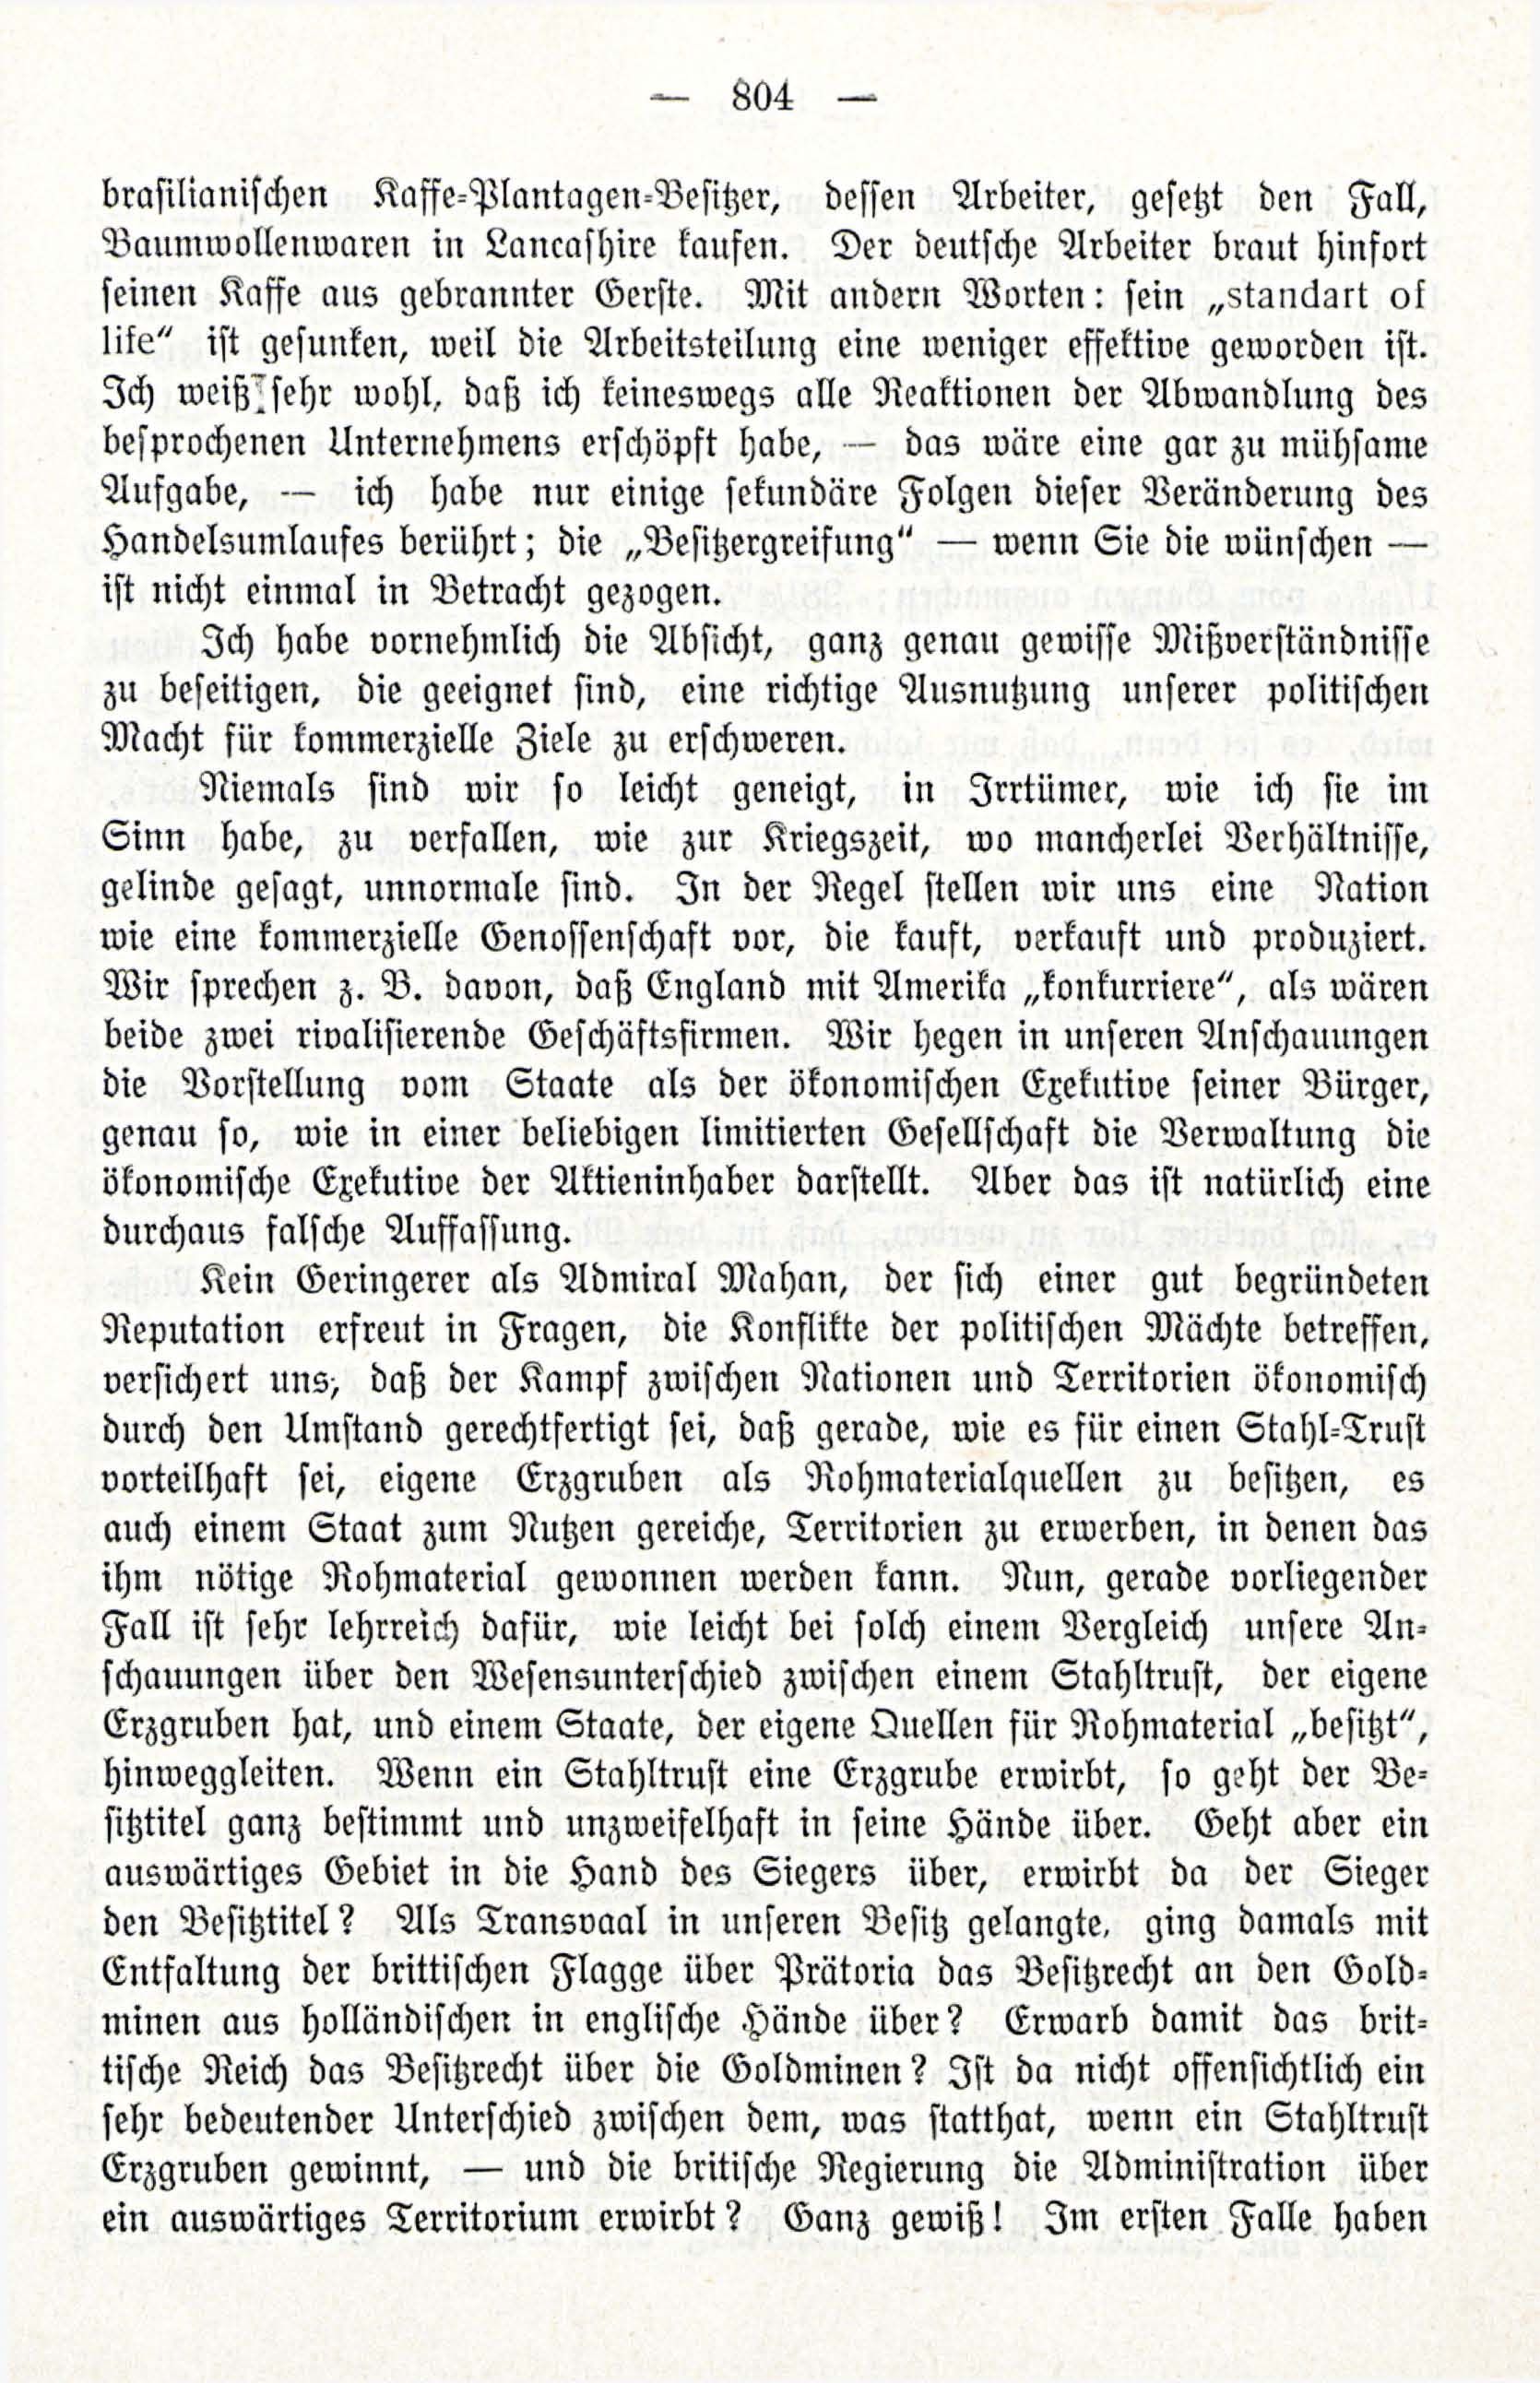 Deutsche Monatsschrift für Russland [3/12] (1914) | 20. (804) Main body of text